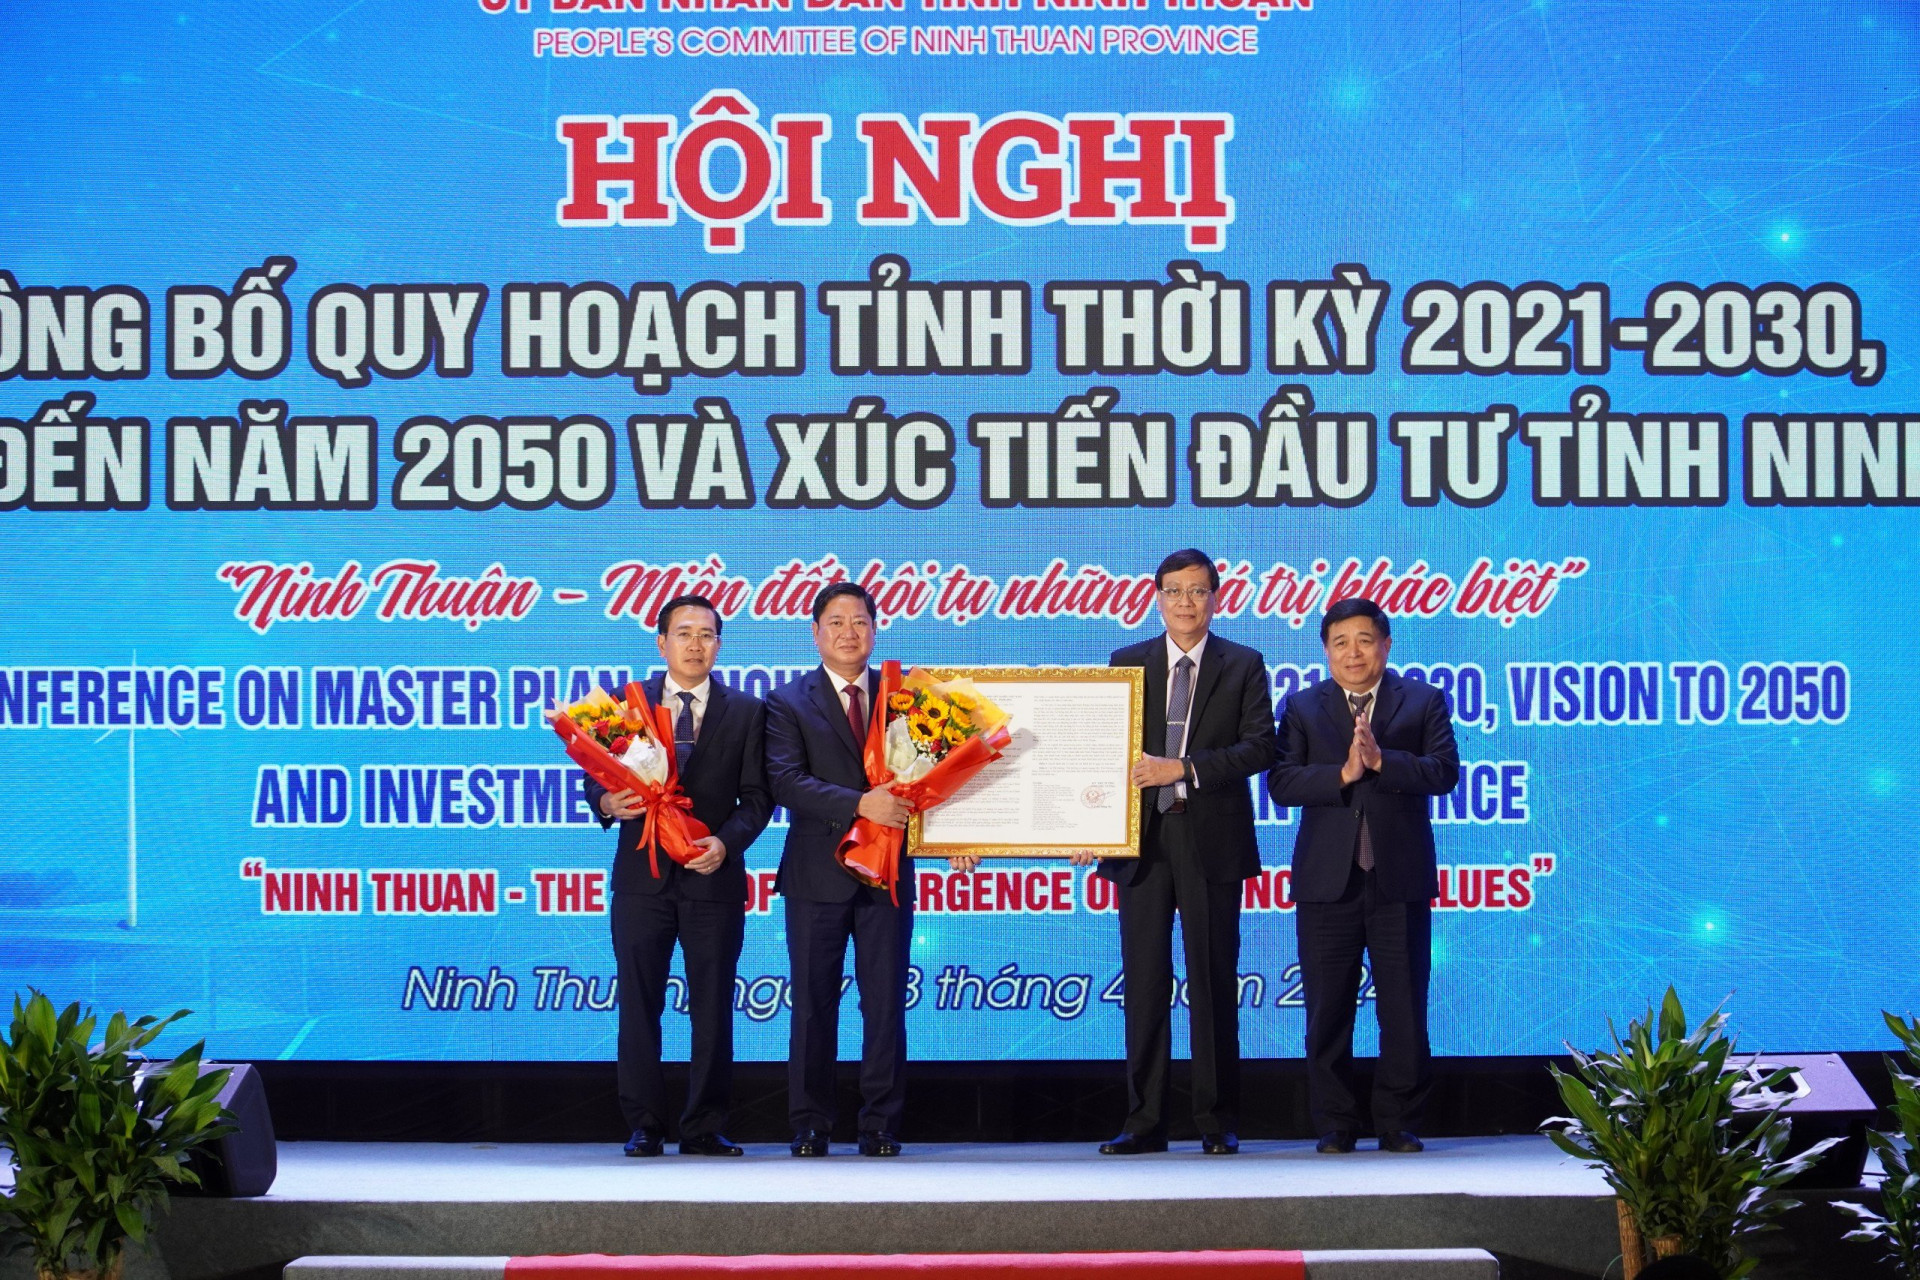 Bộ trưởng Bộ Kế hoạch và Đầu tư Nguyễn Chí Dũng trao quyết định phê duyệt quy hoạch cho lãnh đạo tỉnh Ninh Thuận